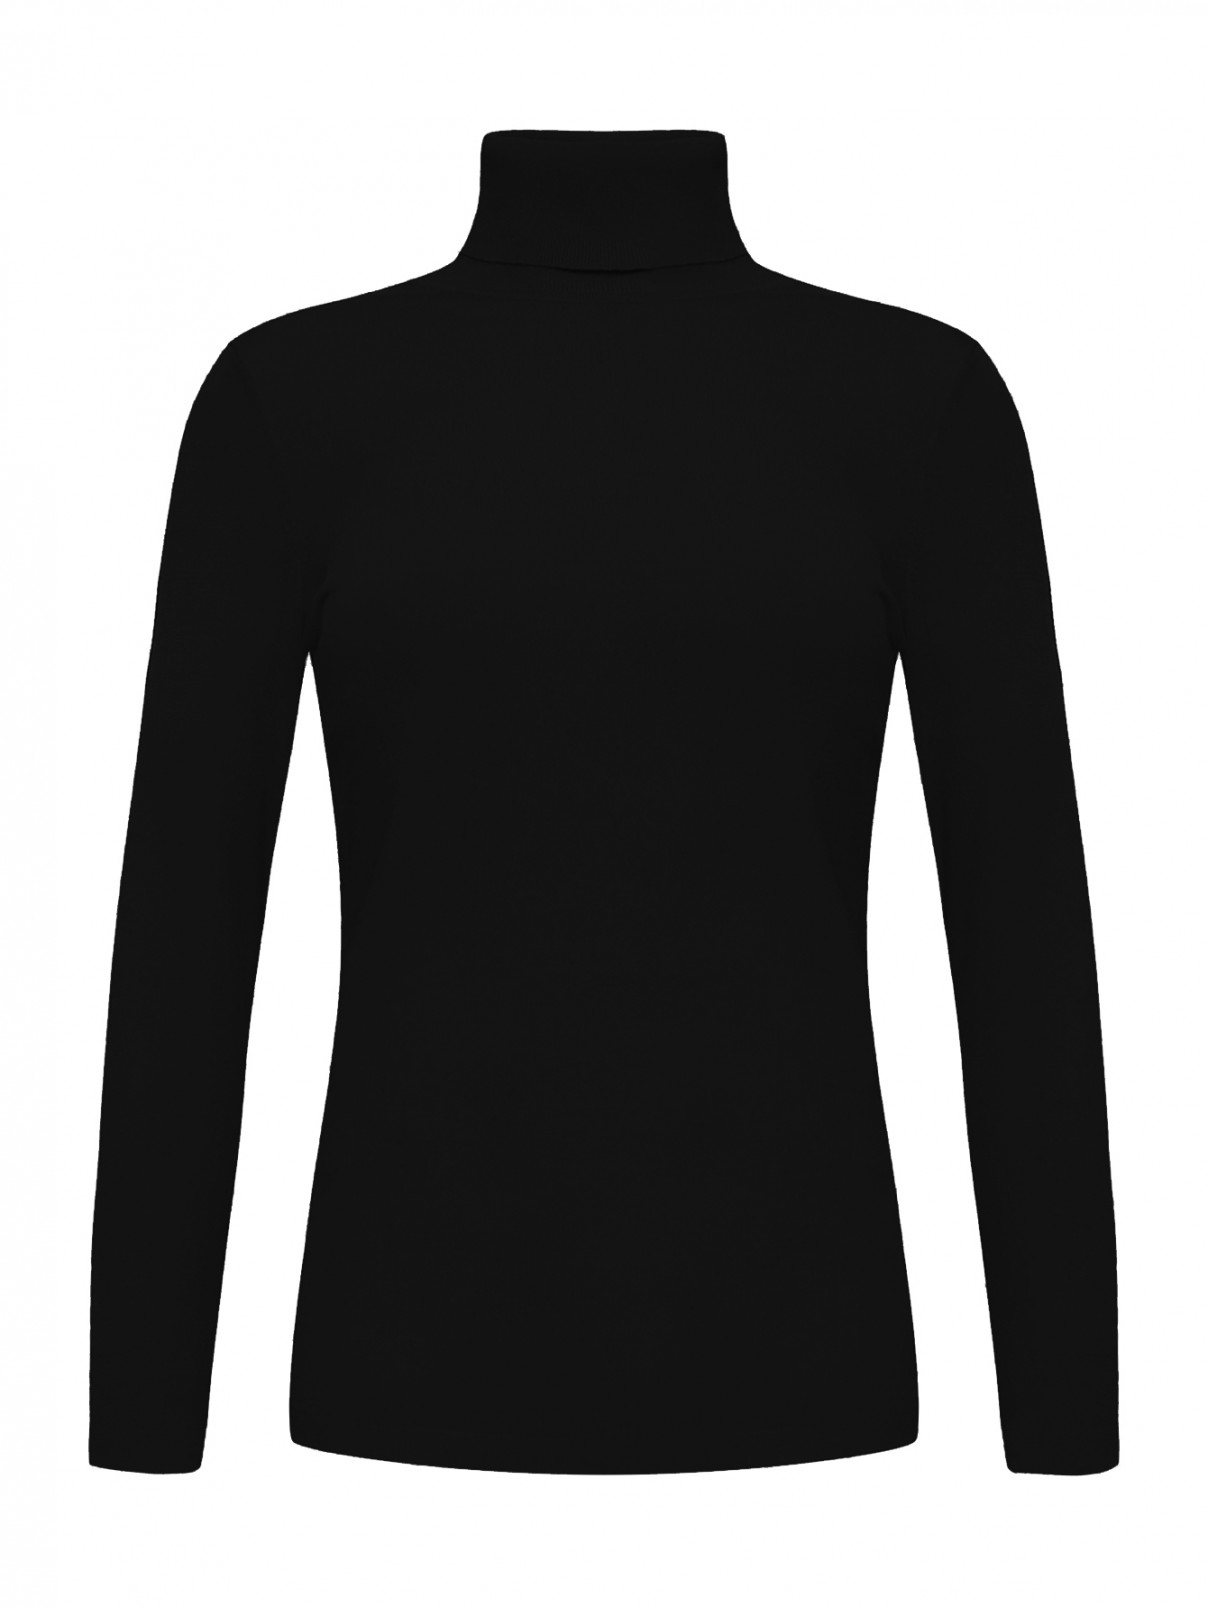 Водолазка с длинными рукавами Diane von Furstenberg  –  Общий вид  – Цвет:  Черный